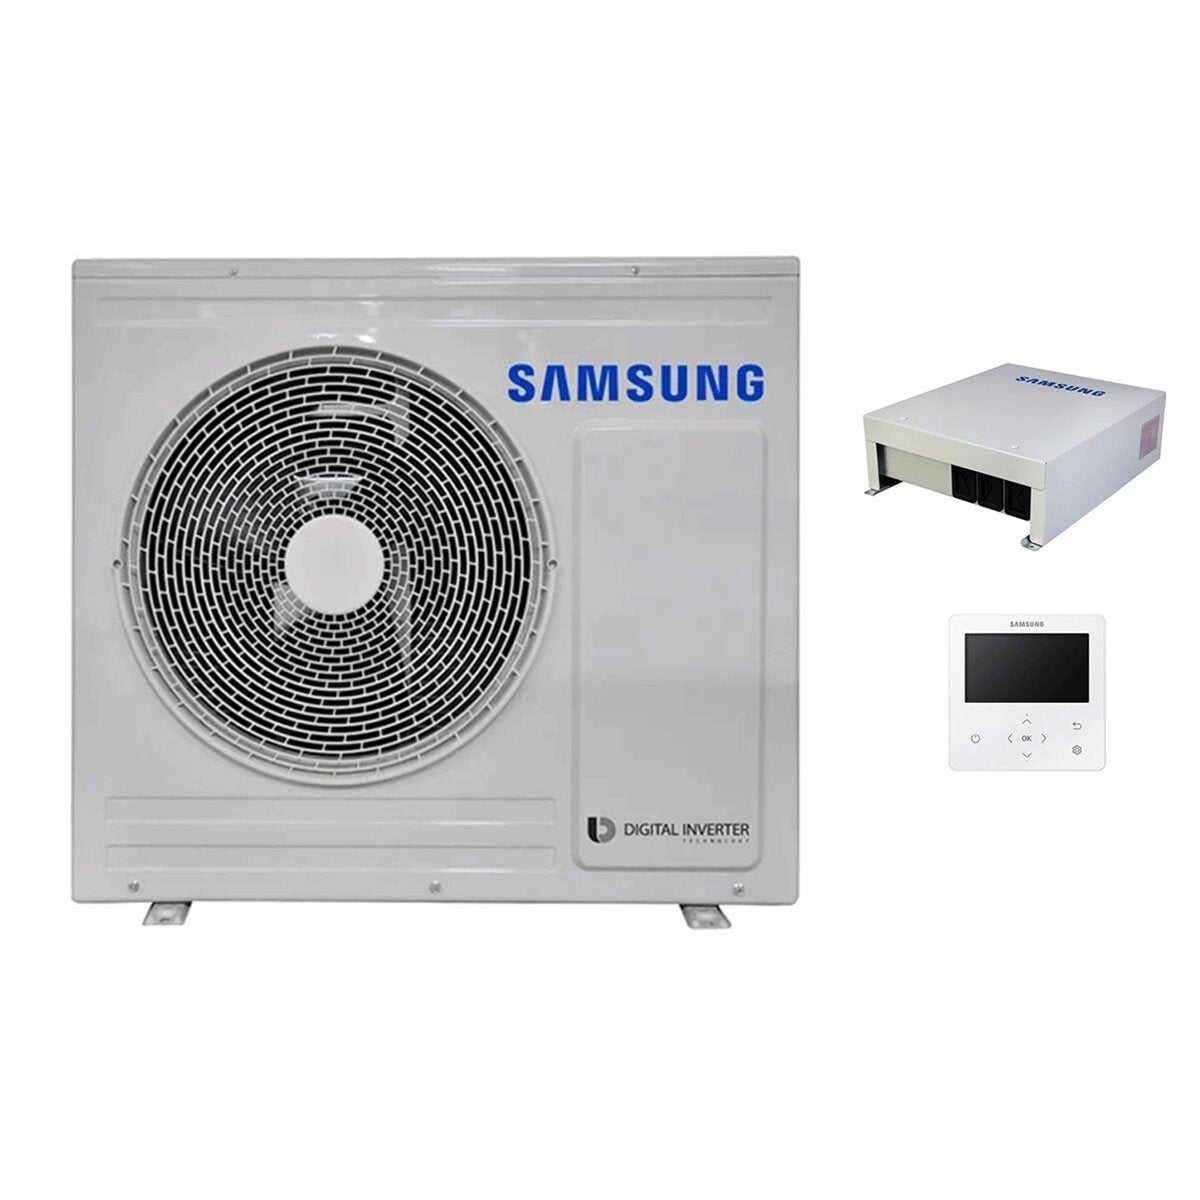 Samsung EHS MONO 5 kW single-phase R32 Inverter heat pump